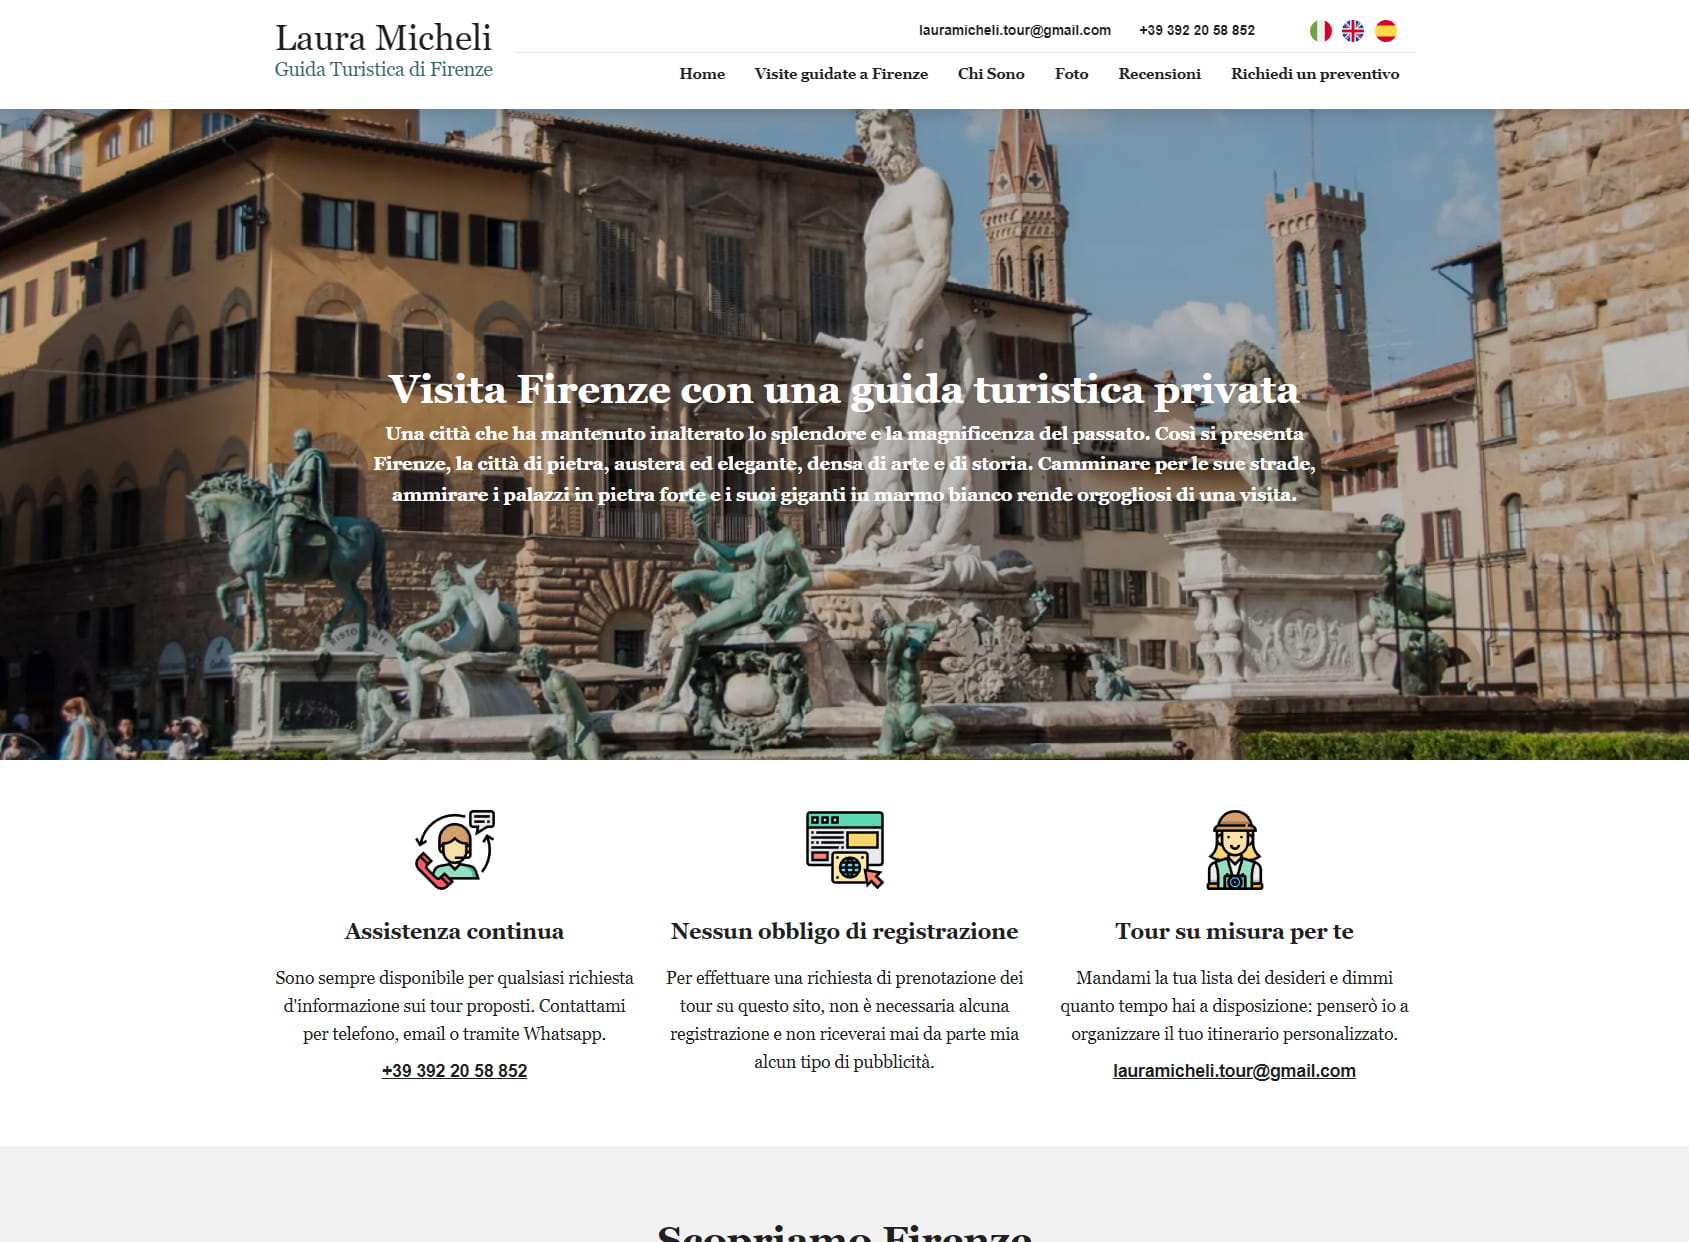 Laura Micheli Guida turistica certificata locale Firenze